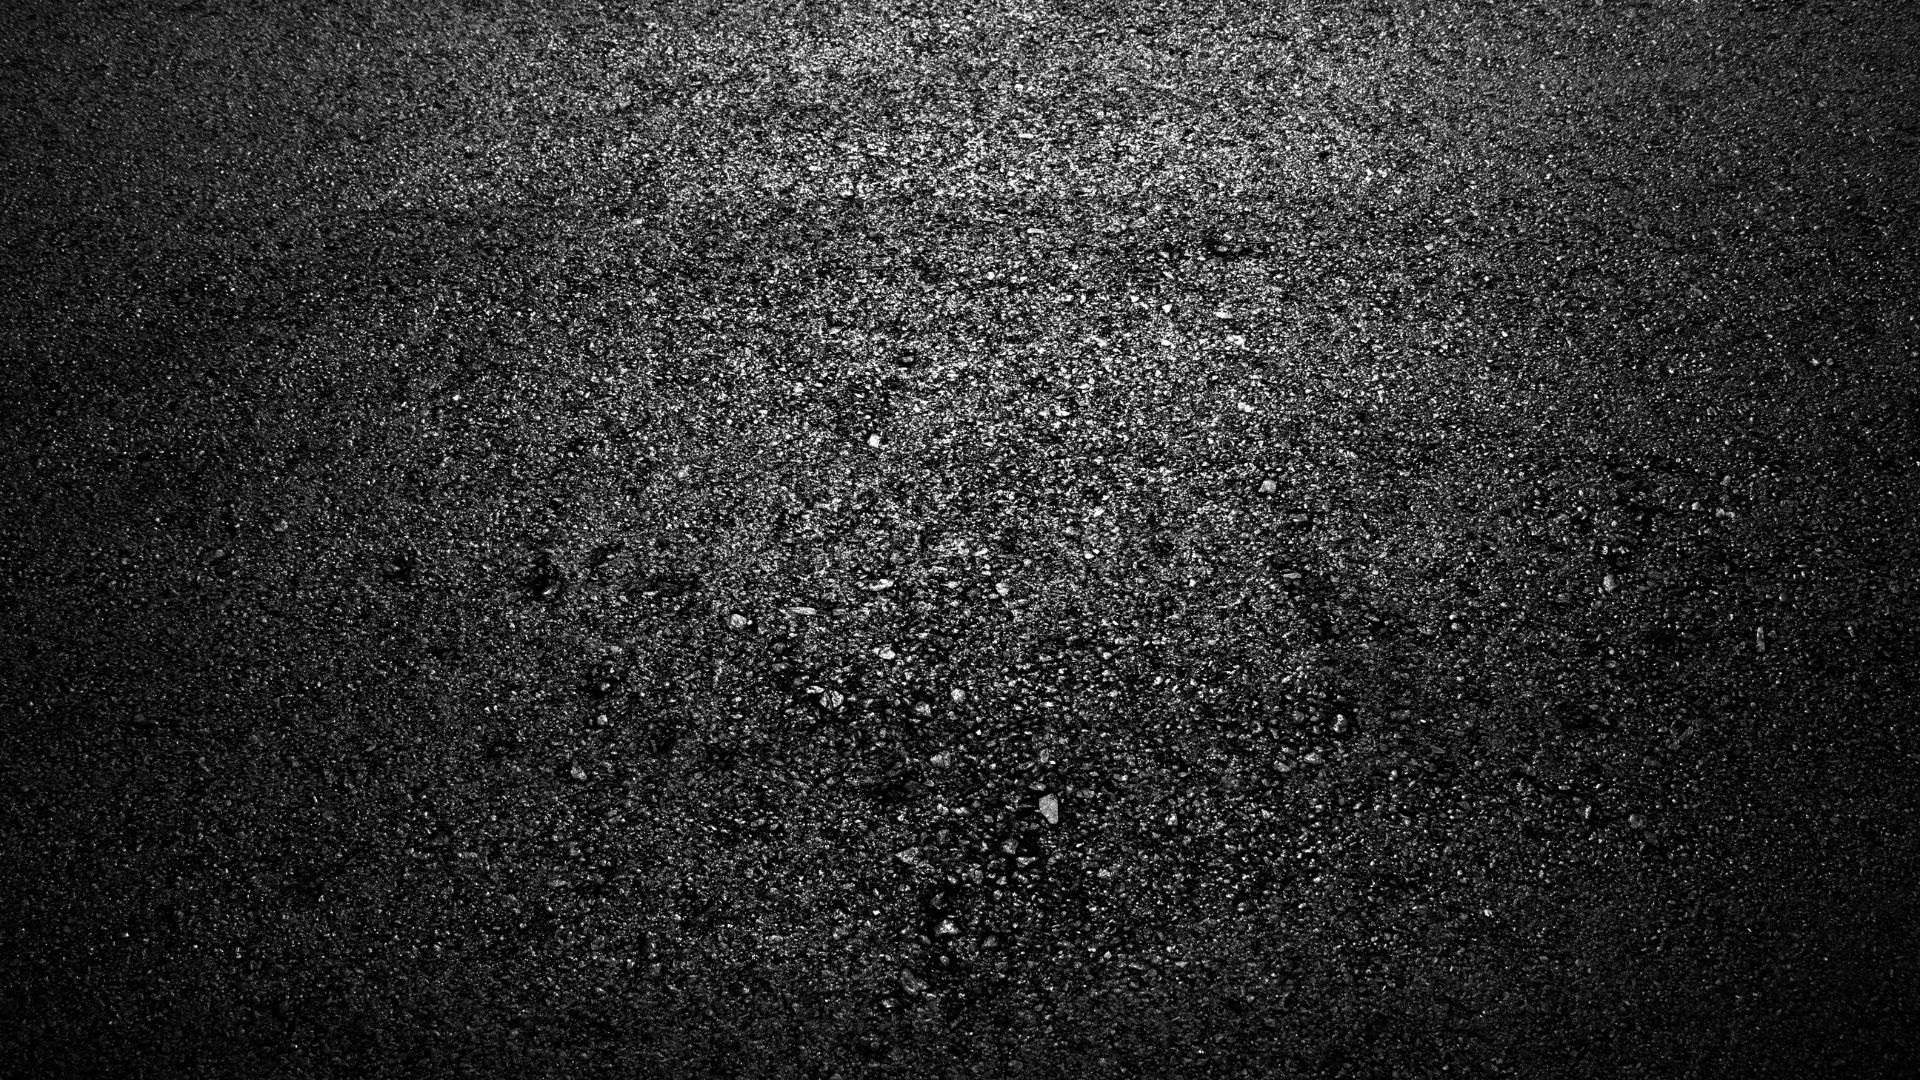 sealcoated asphalt